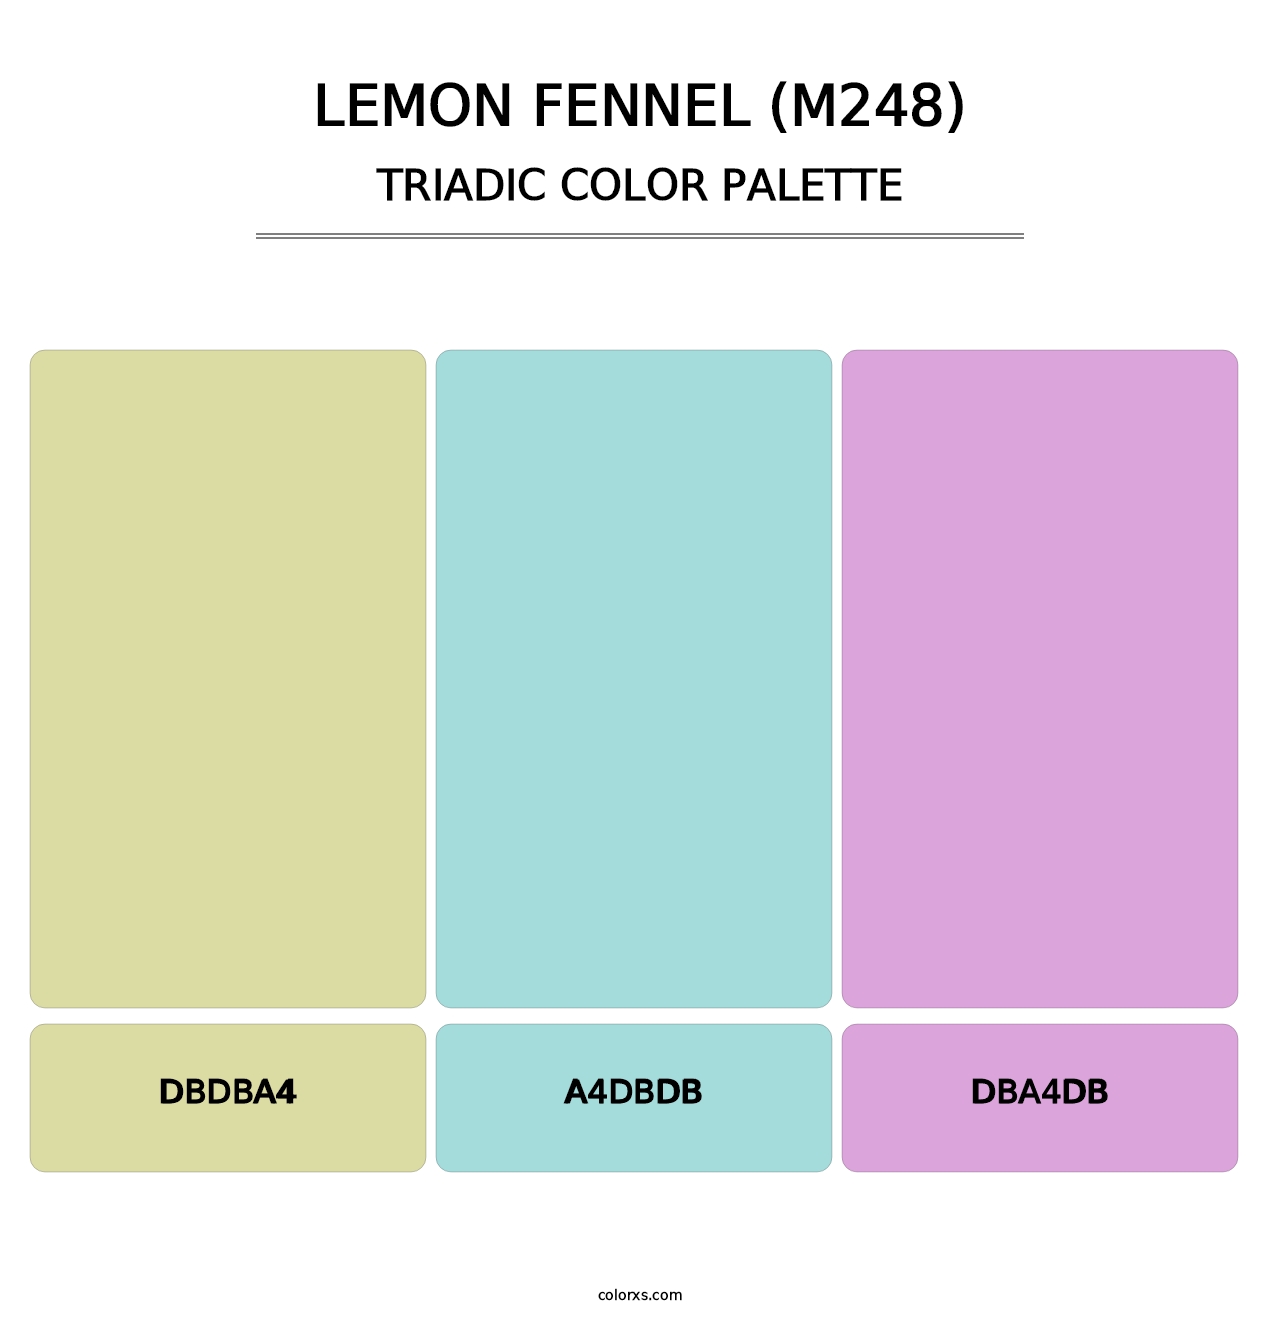 Lemon Fennel (M248) - Triadic Color Palette